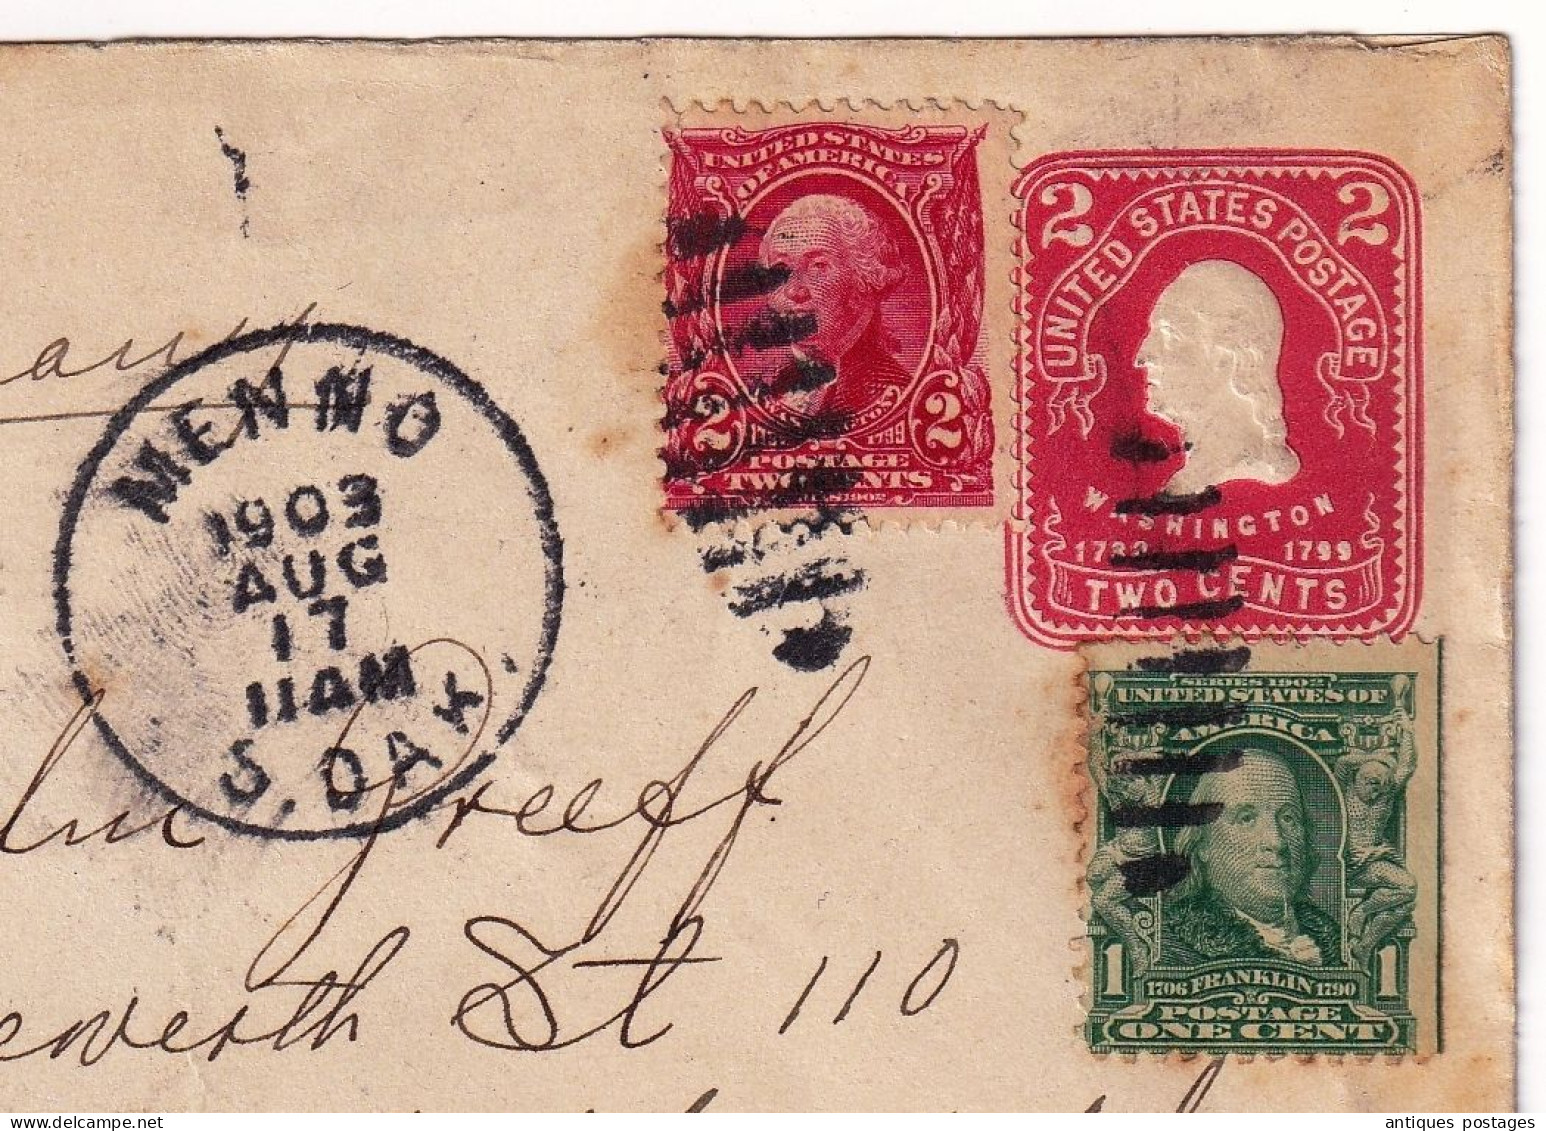 Menno 1903 Jacob Schnaidt South Dakota USA Elberfeld Deutschland Germany Bank Of Menno Velykokomarivka Ukraine - Storia Postale